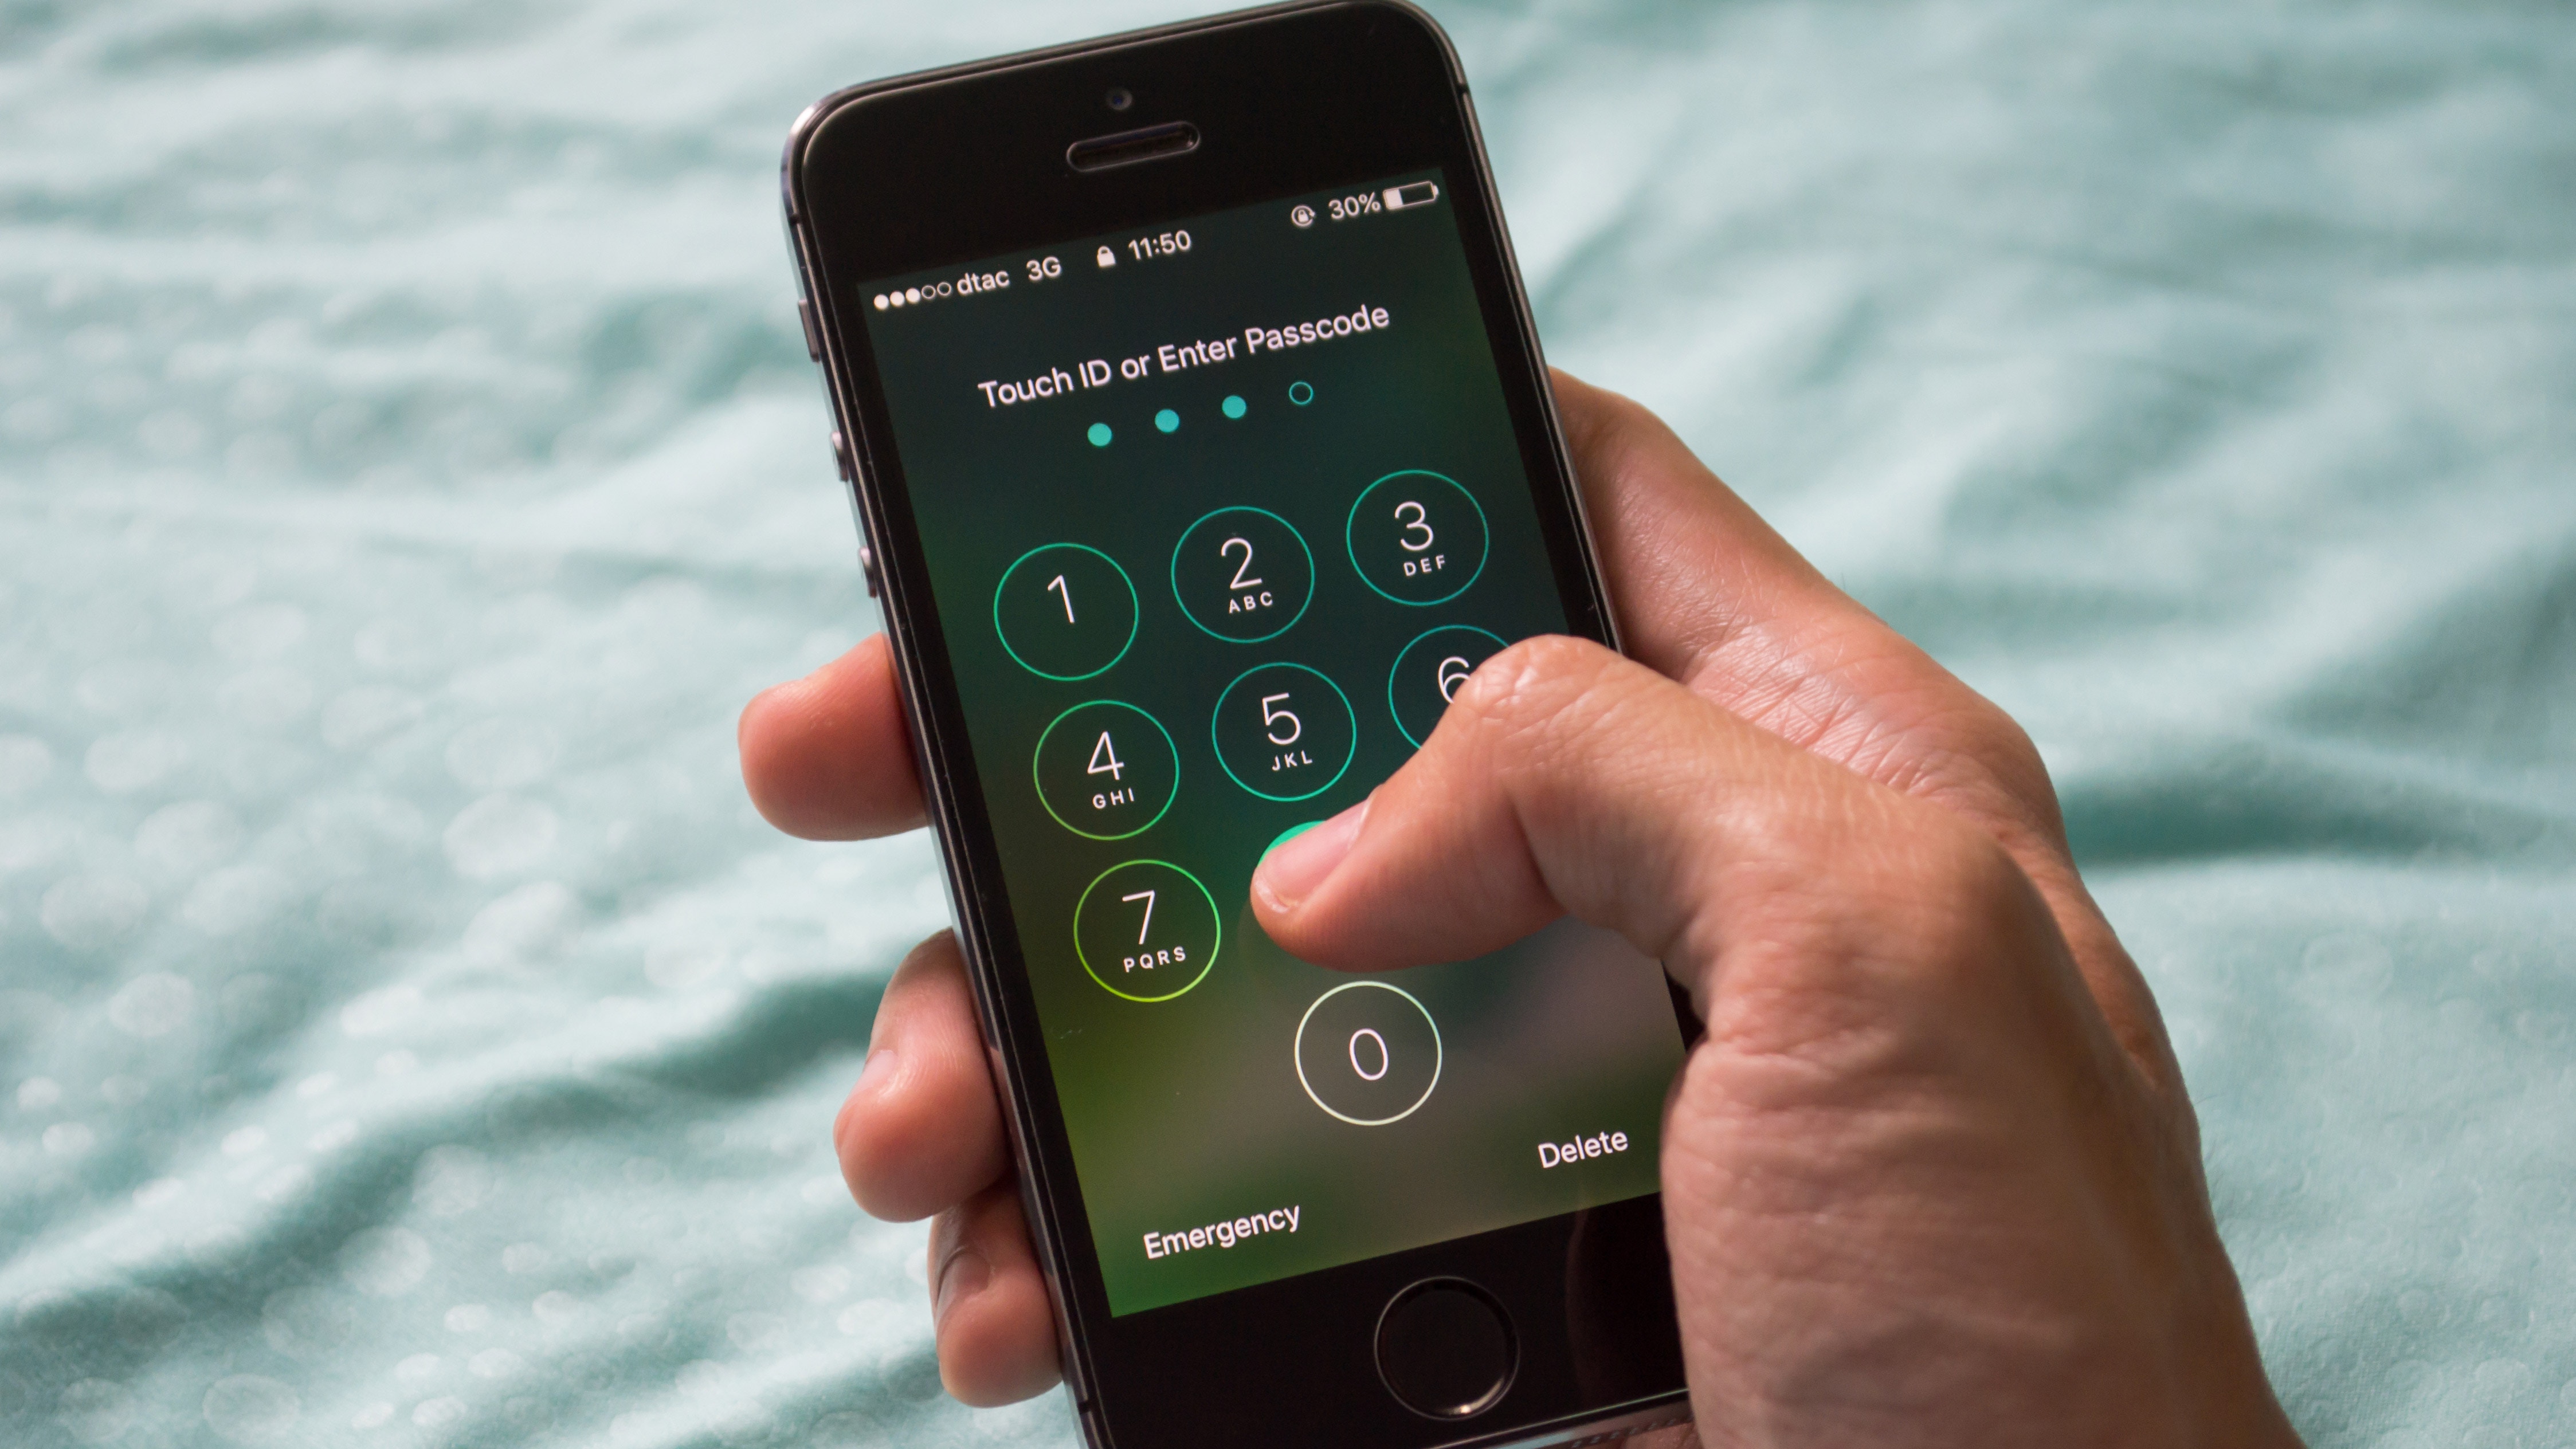 Iphone破解工具曝光美國警察都用可自動記錄用戶輸入密碼